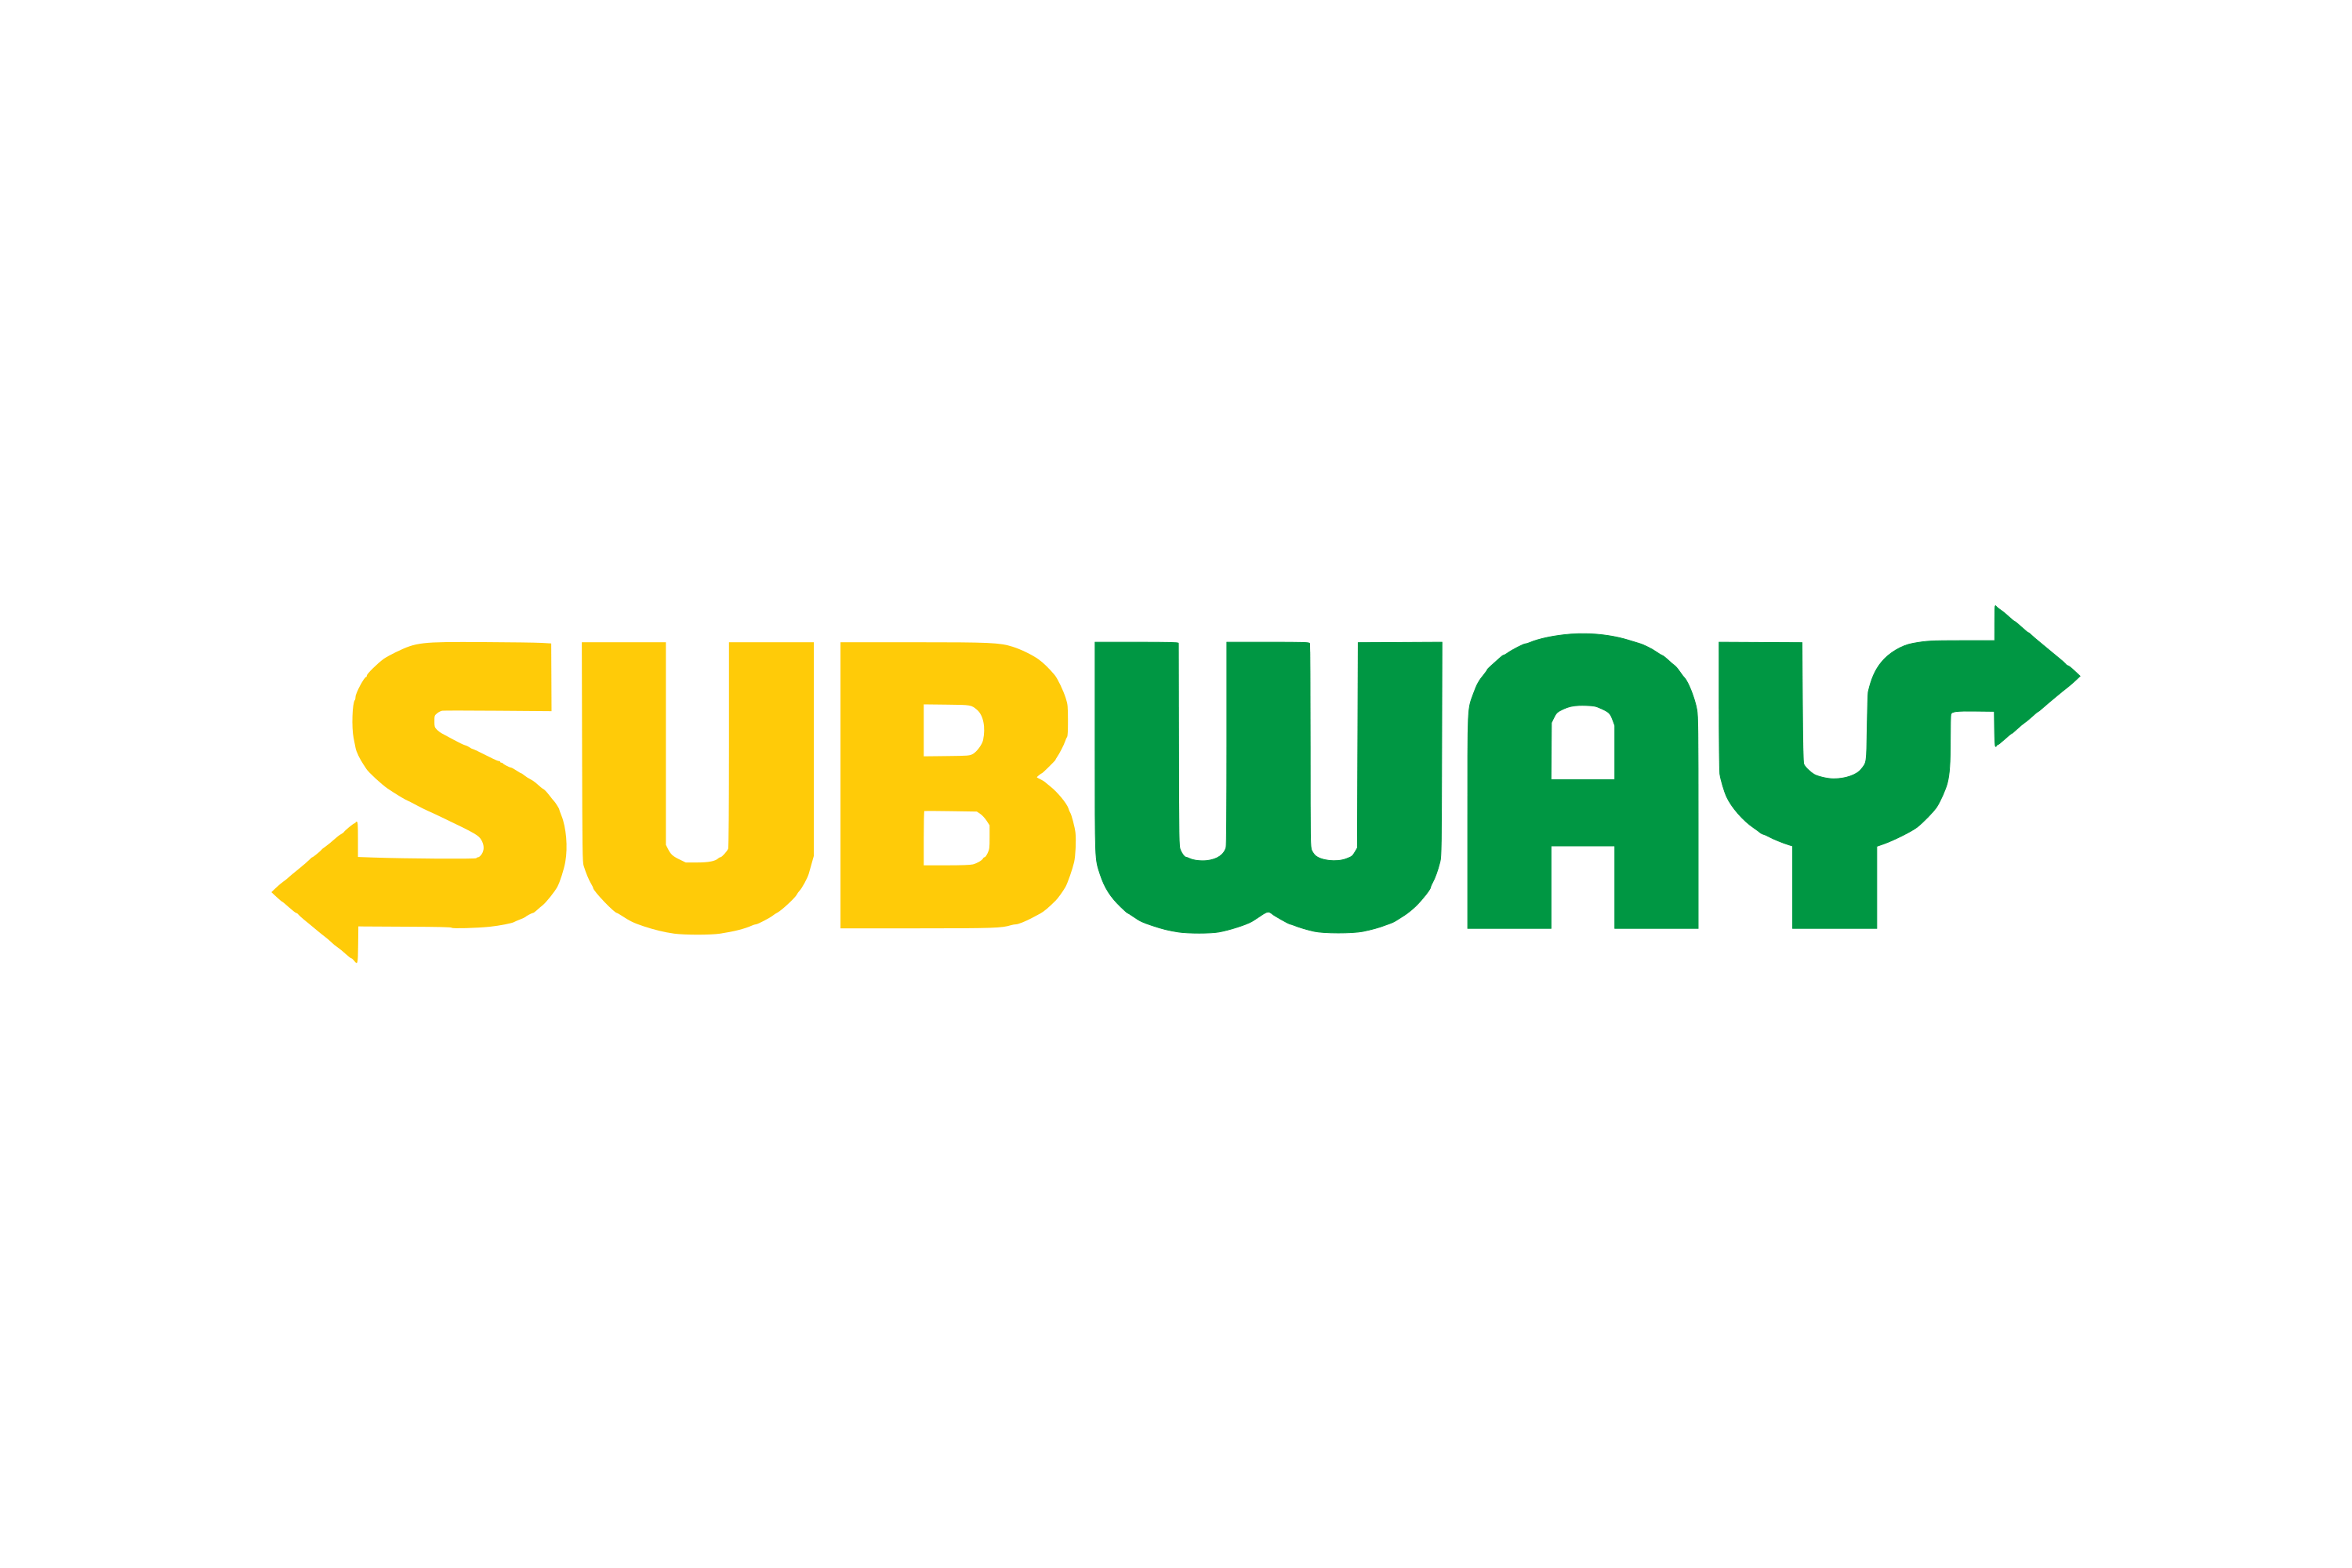 Subway Logo Png Images, Free 